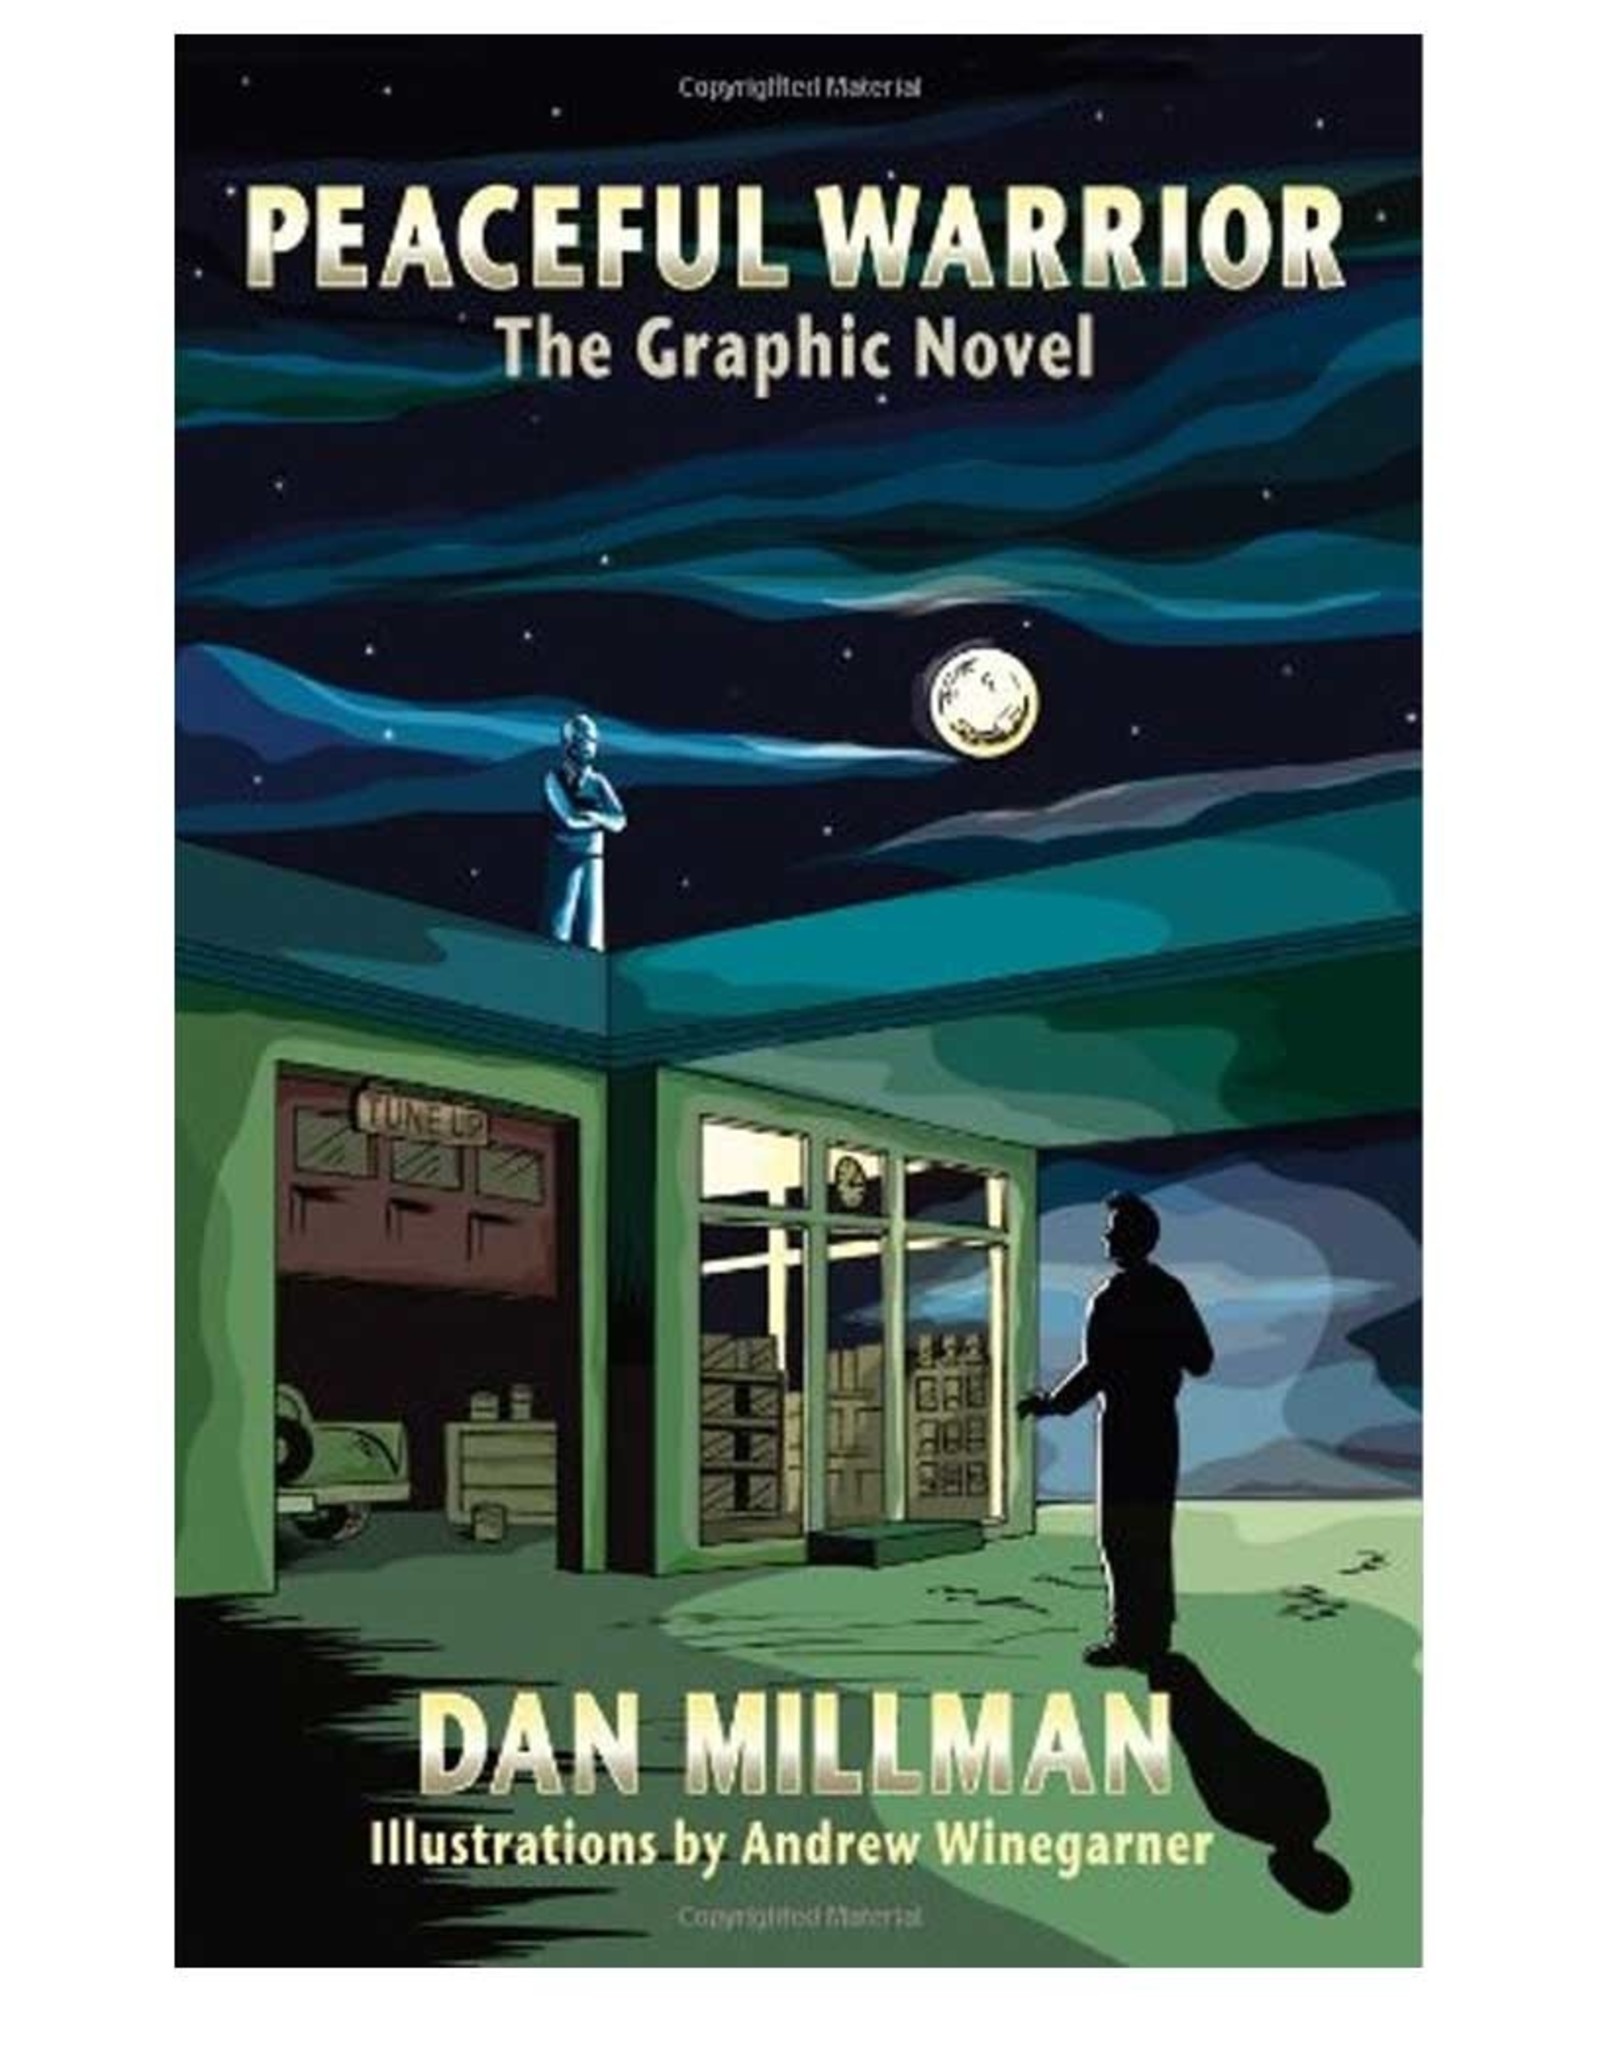 Peaceful Warrior by Dan Millman